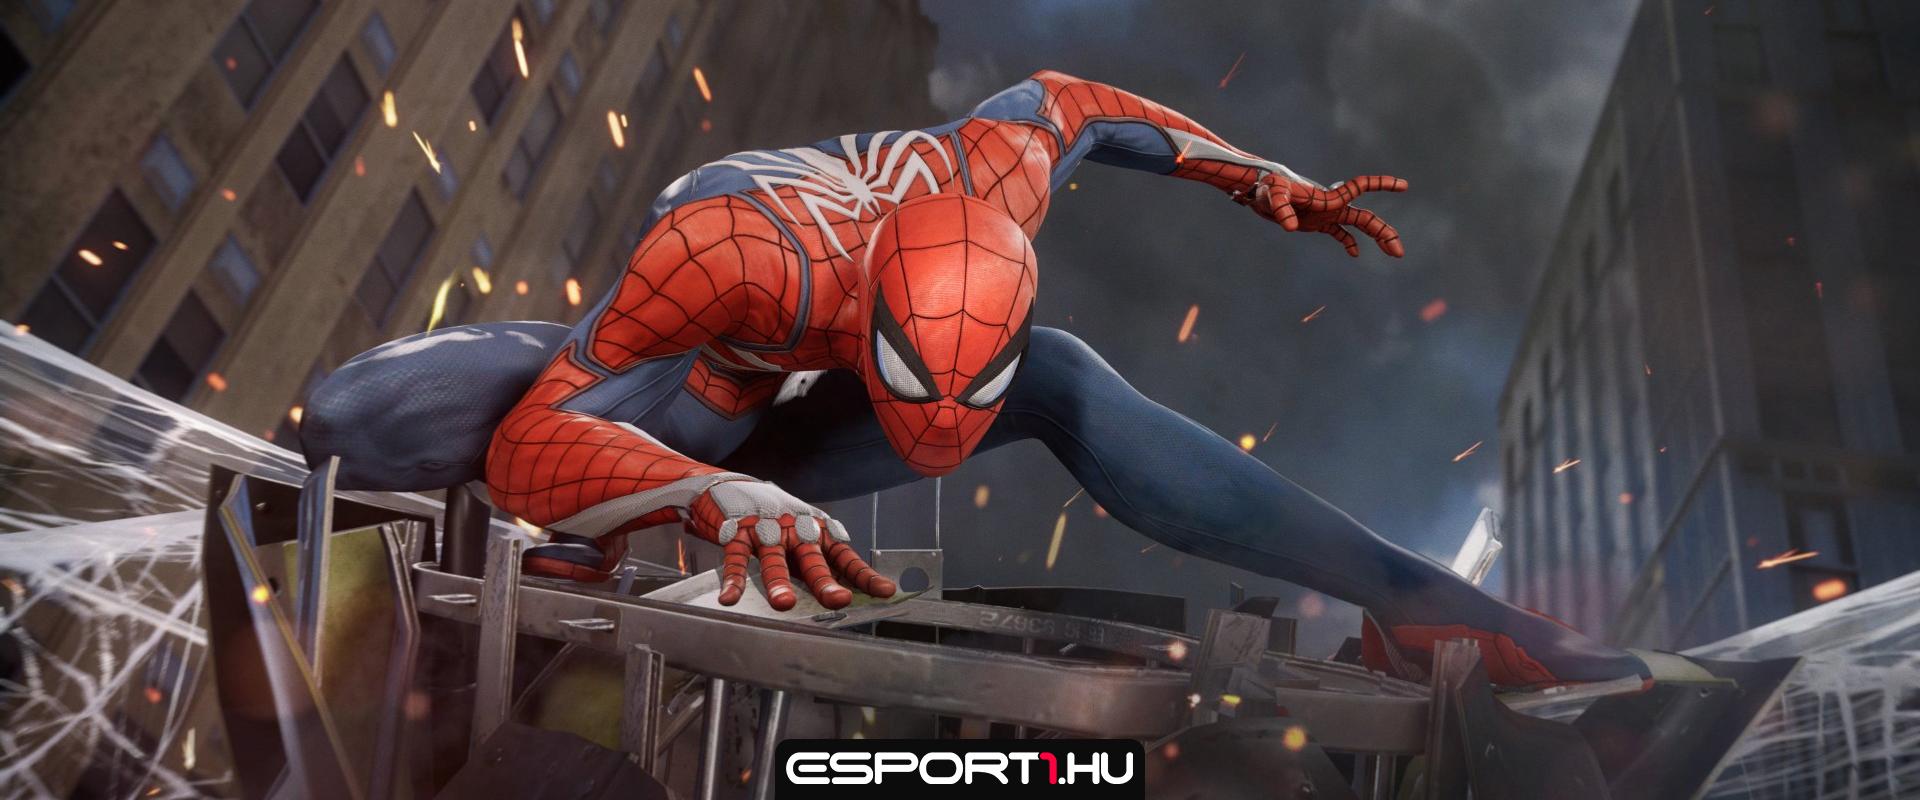 Akár a buszon ülve is játszhatunk majd a Marvel's Spider-Man PC-s kiadásával